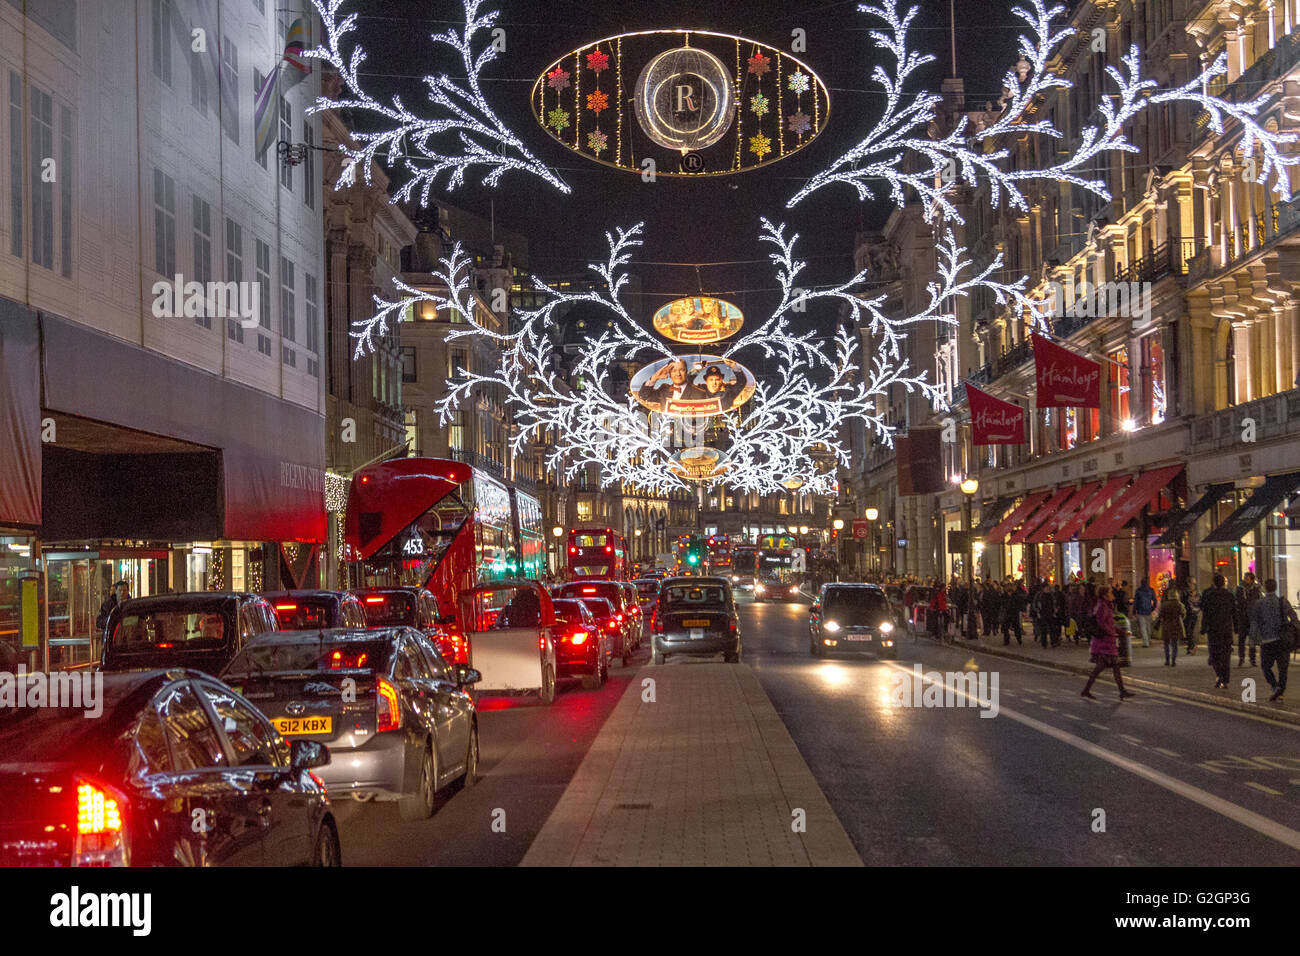 Noël est illuminé le long d'une rue Regent très animée où se trouvent des clients à l'heure de Noël dans le West End de Londres Banque D'Images